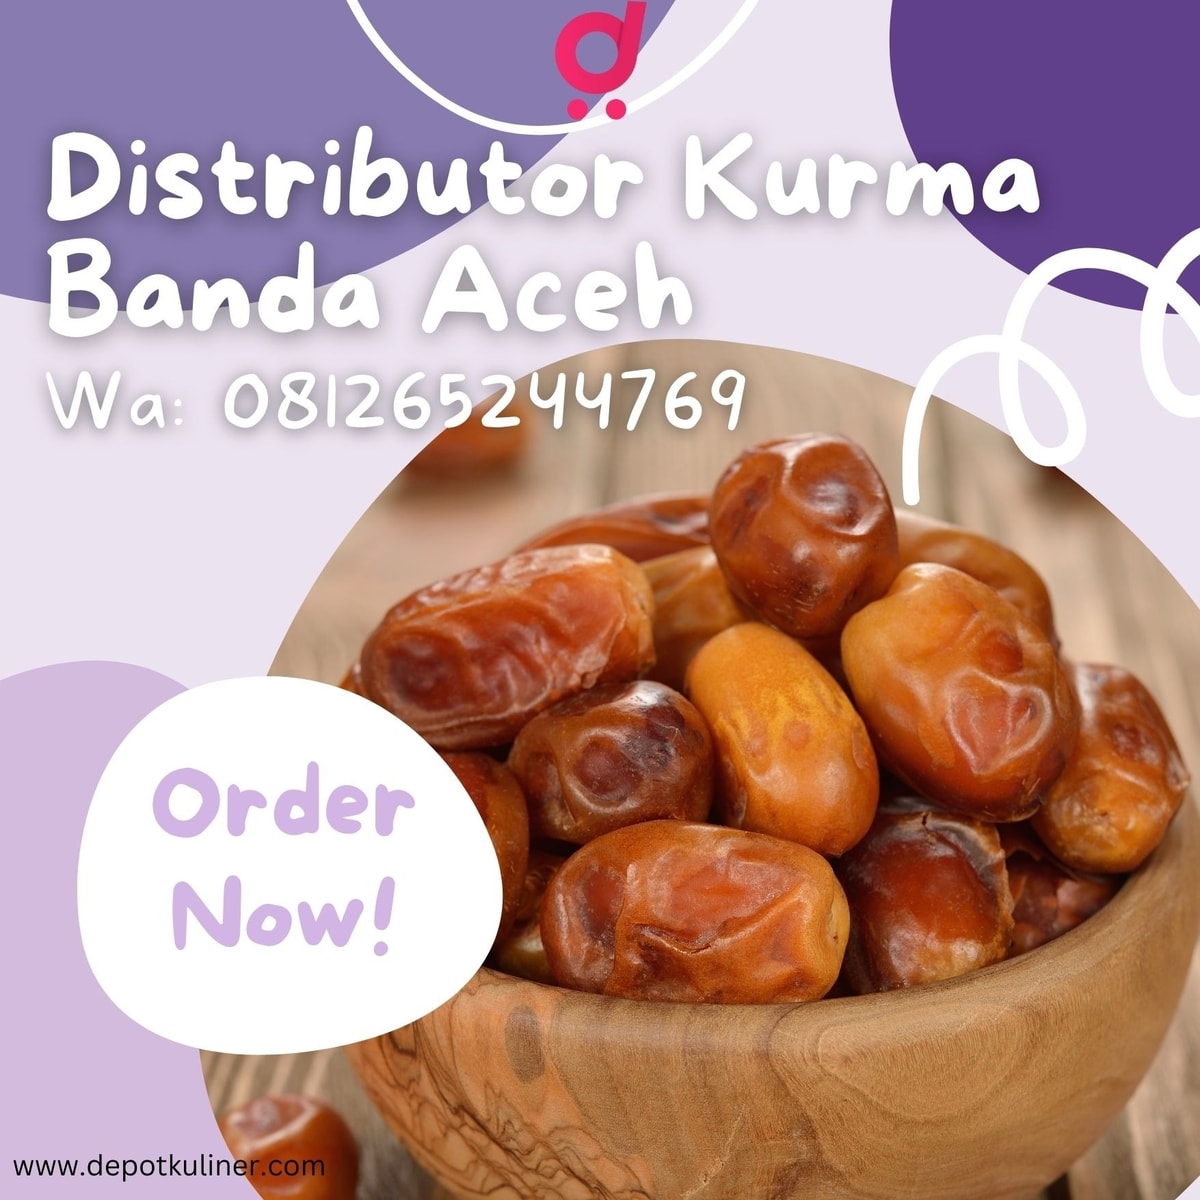 DISKON DISTRIBUTOR, 0812-6524-4769 Distributor Kurma Banda Aceh